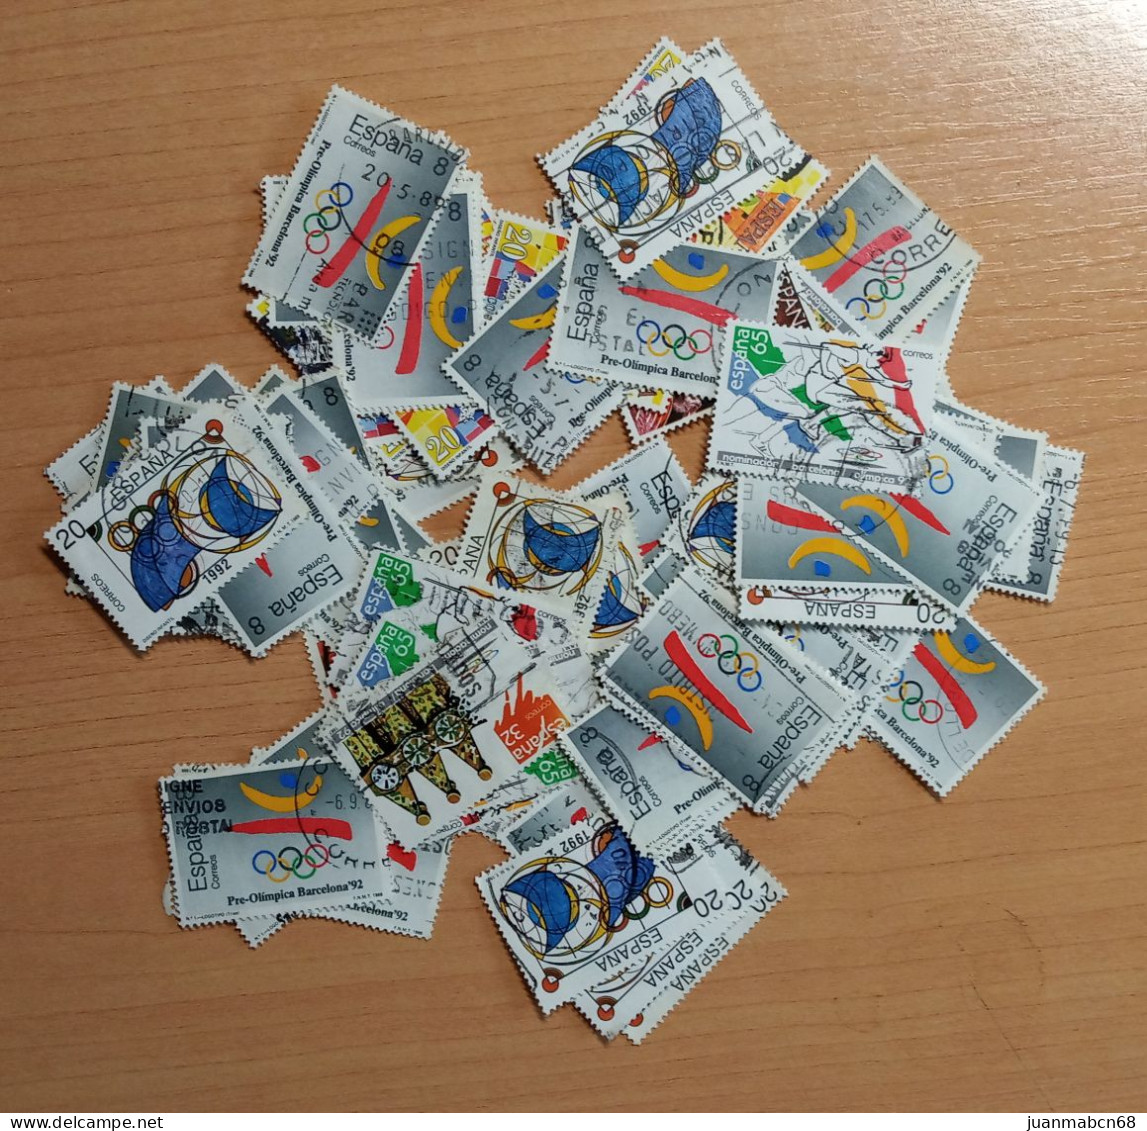 Lote de 438 sellos nuevos (1990 / 1999)